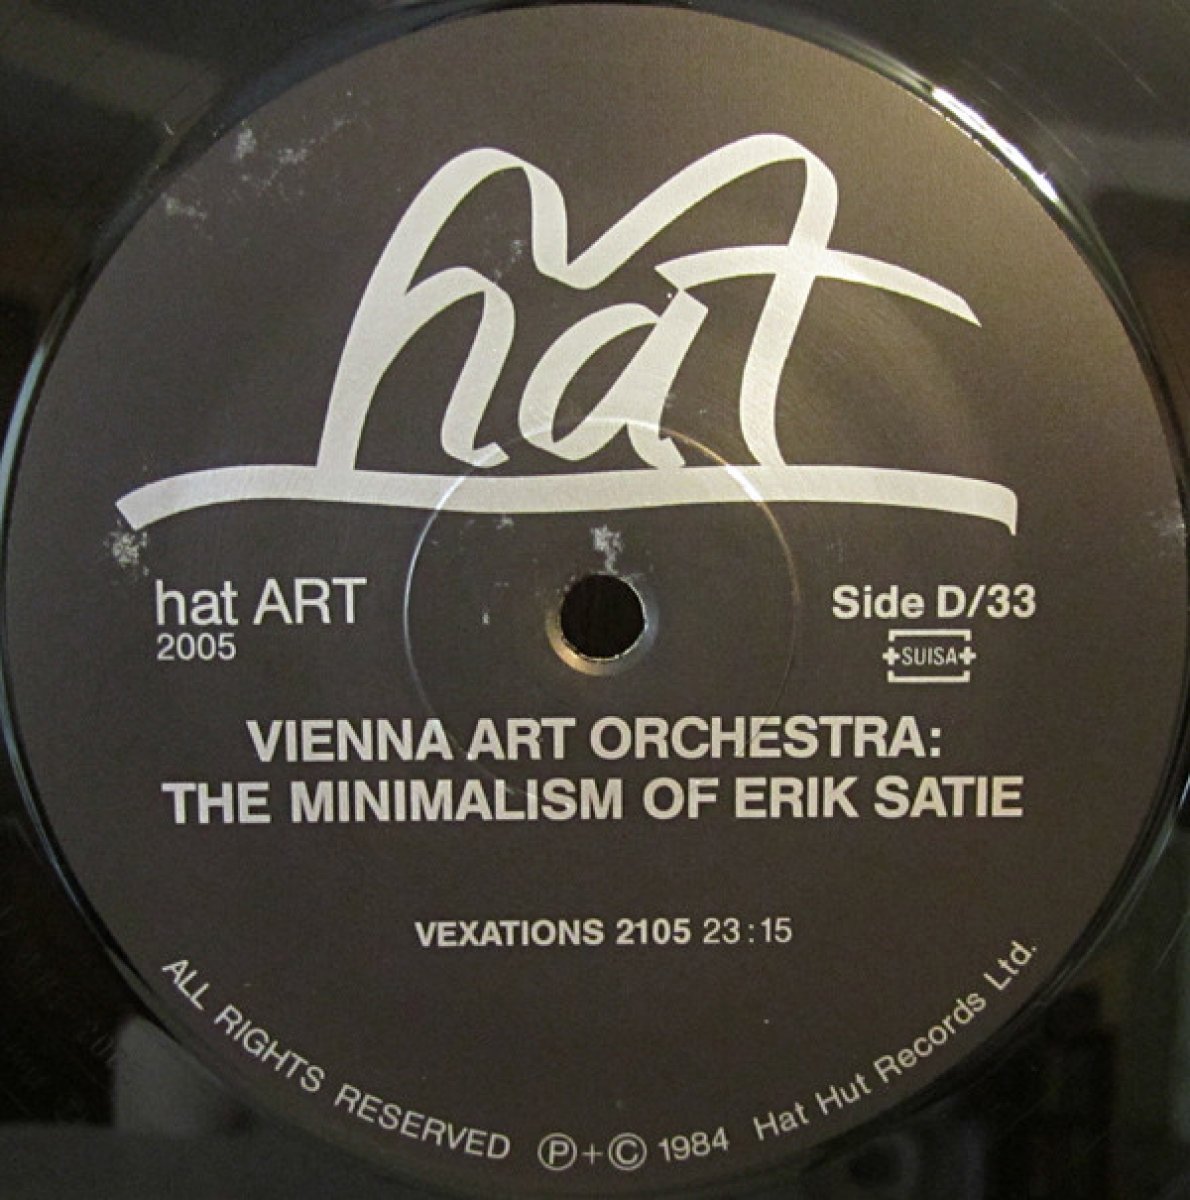 Vienna Art Orchestra "The Minimalism Of Erik Satie"